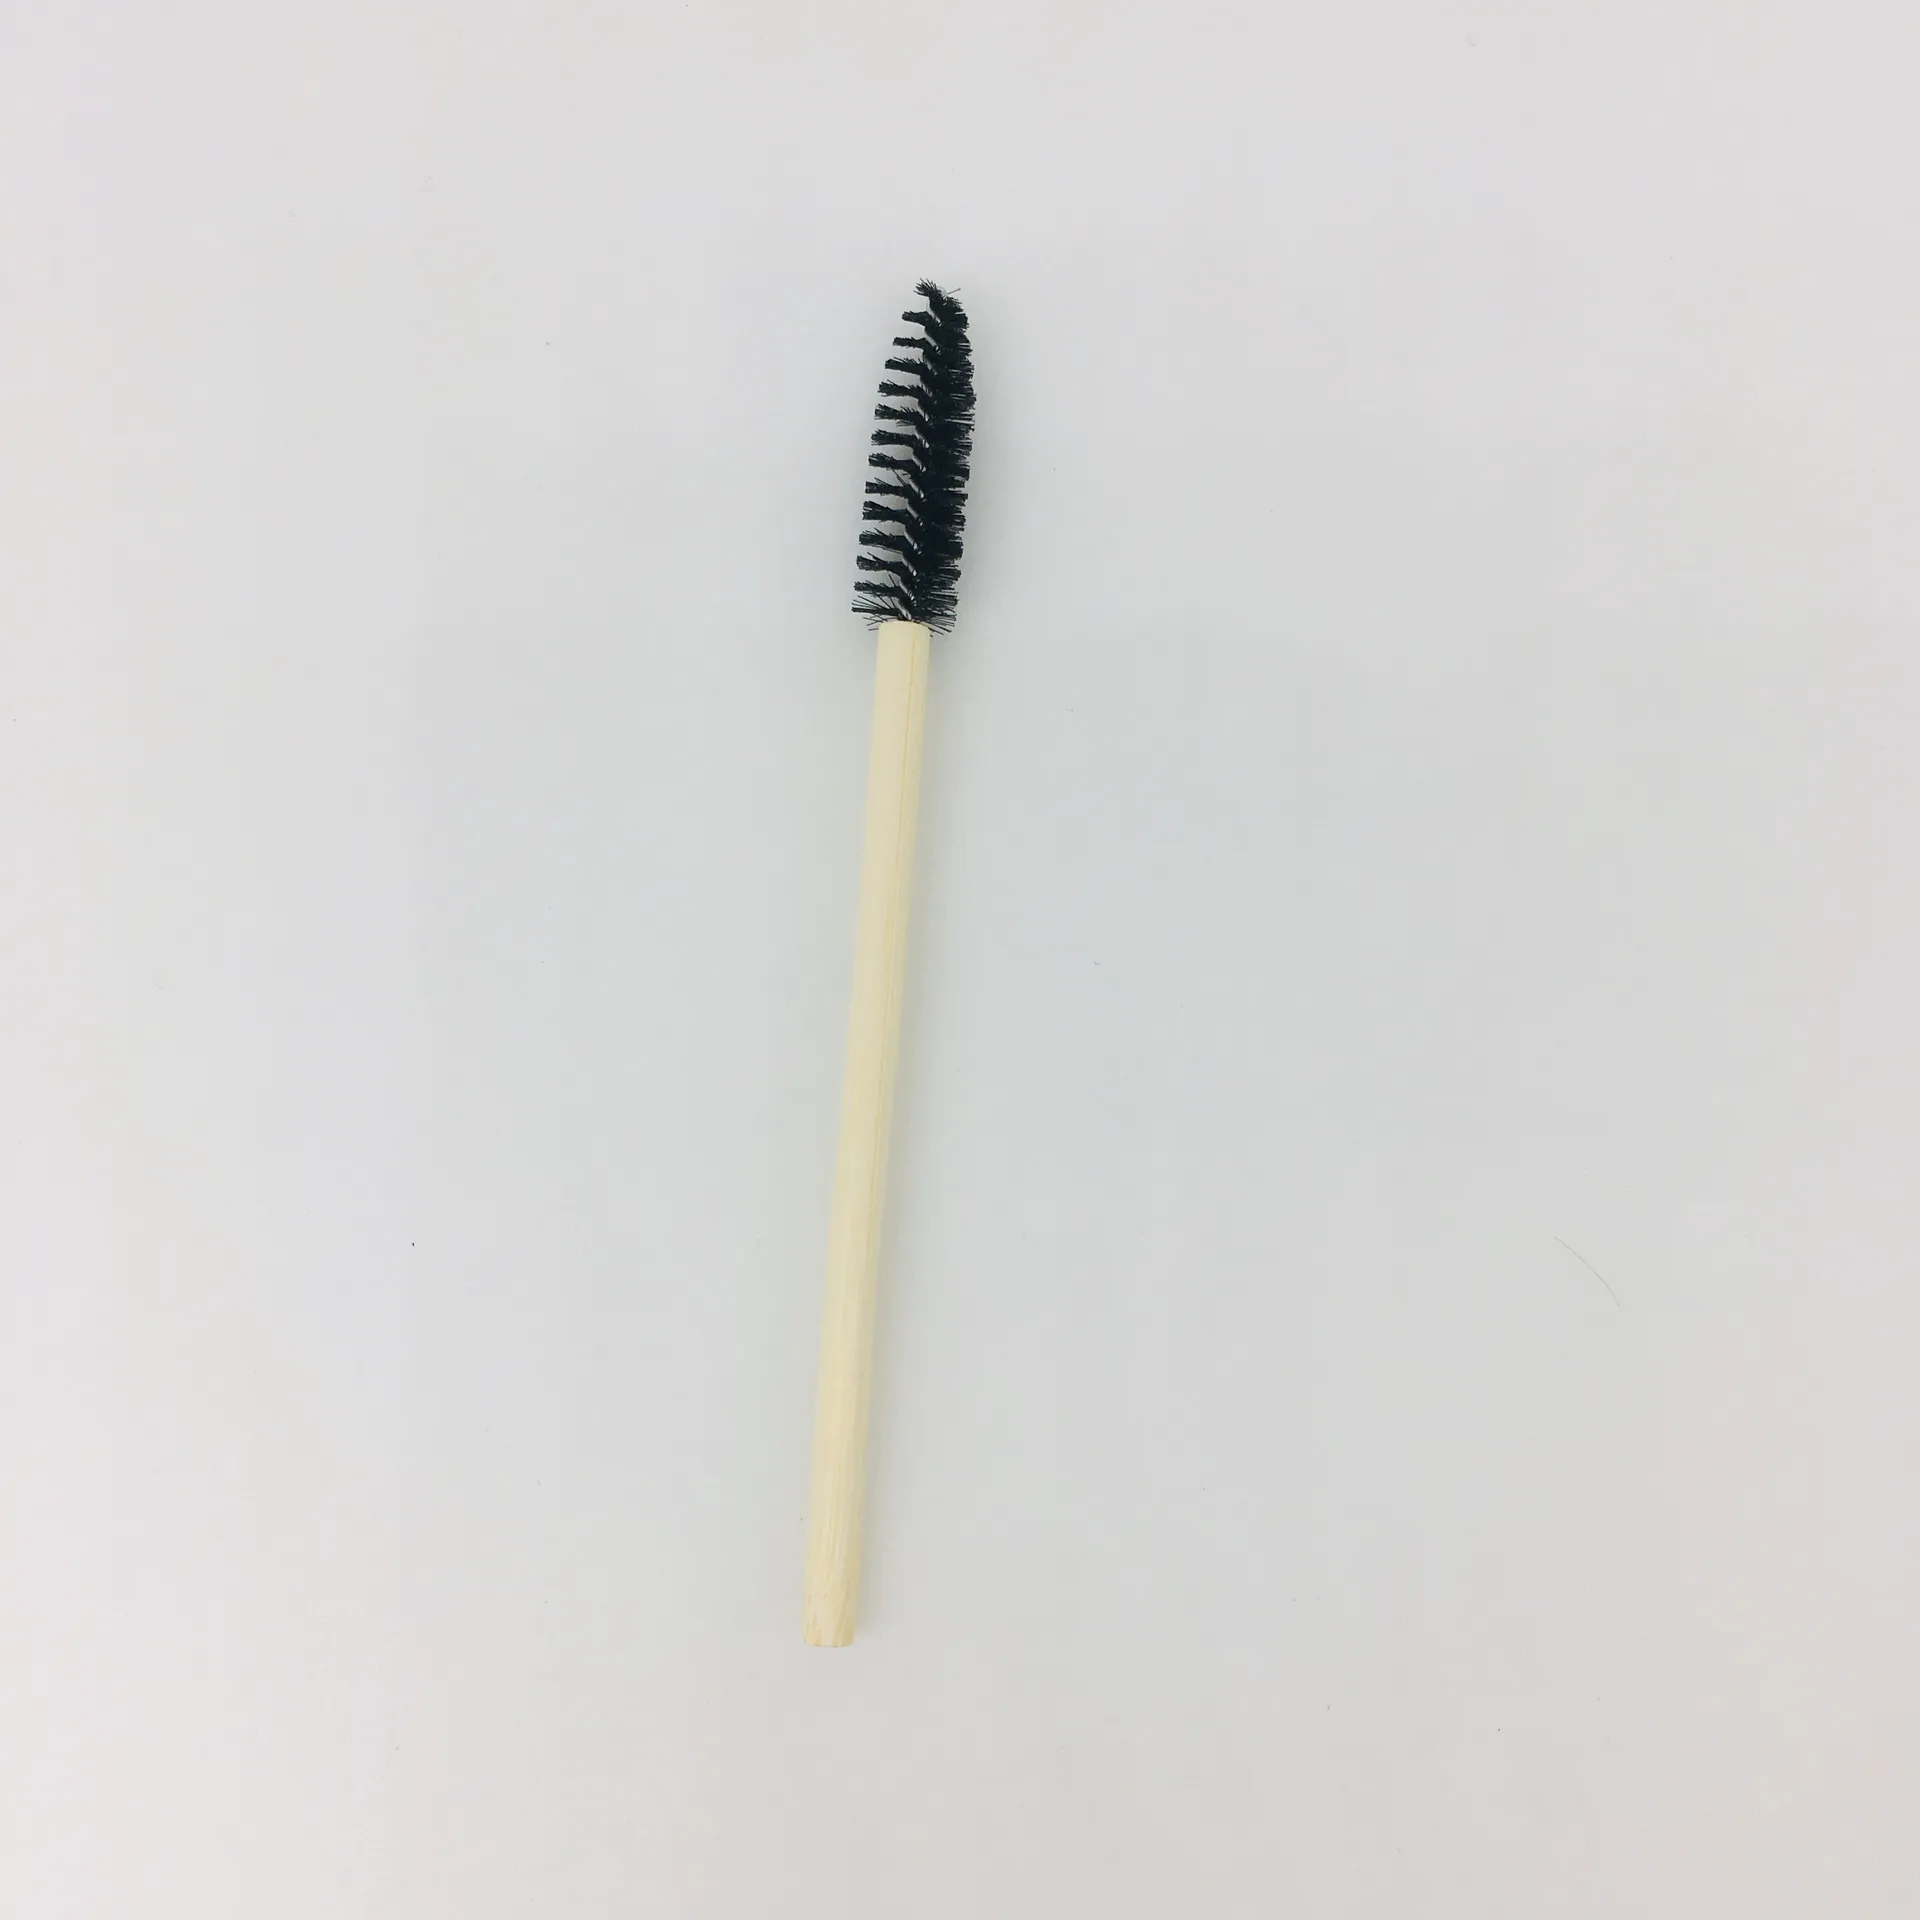 2021 eyelash brush nylon hair tapper shape mascara applicator brush set